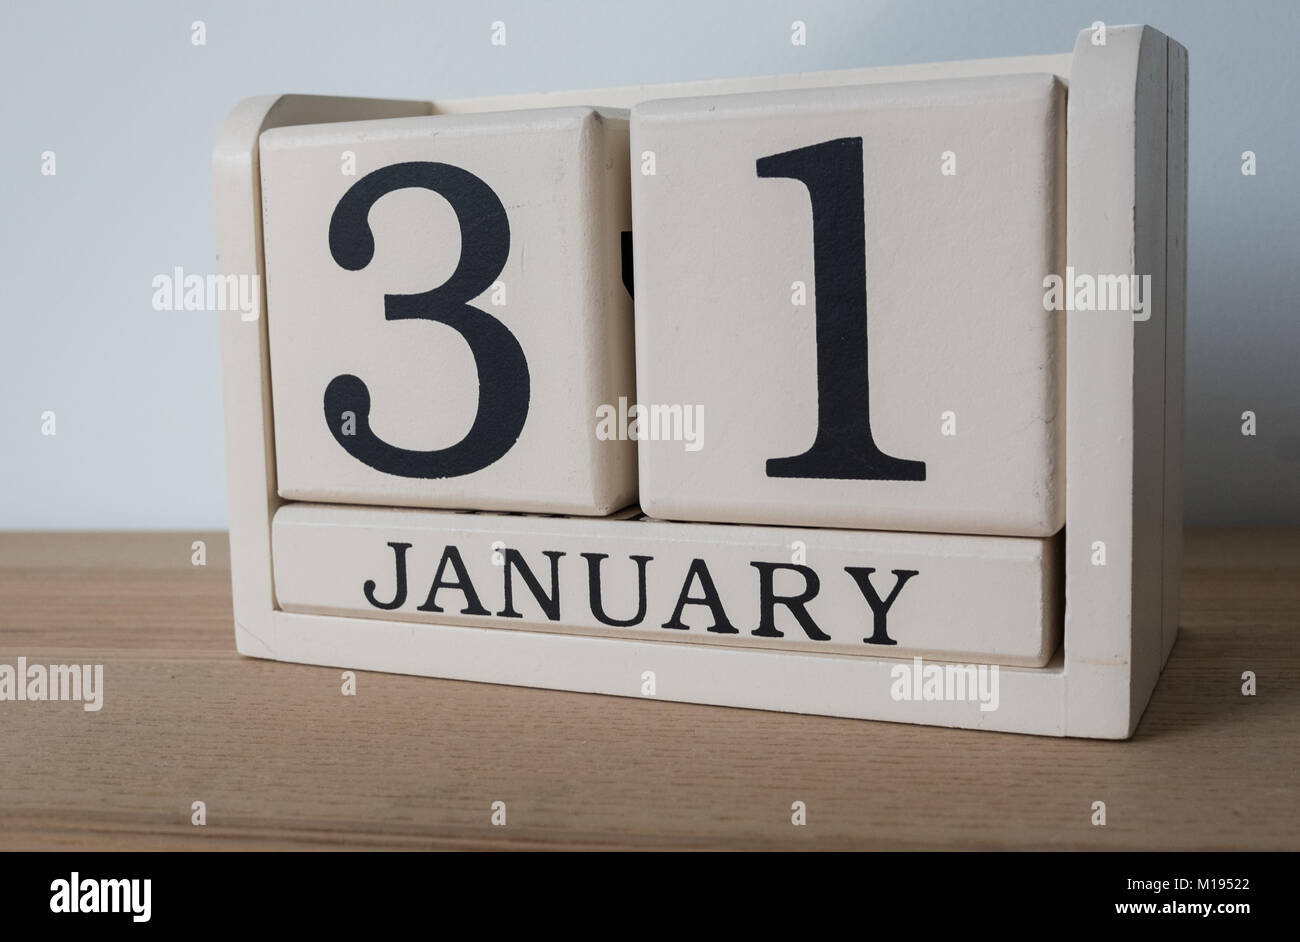 31 janvier, la date sur le calendrier. Date limite d'auto-évaluation pour les travailleurs indépendants au Royaume-Uni Banque D'Images